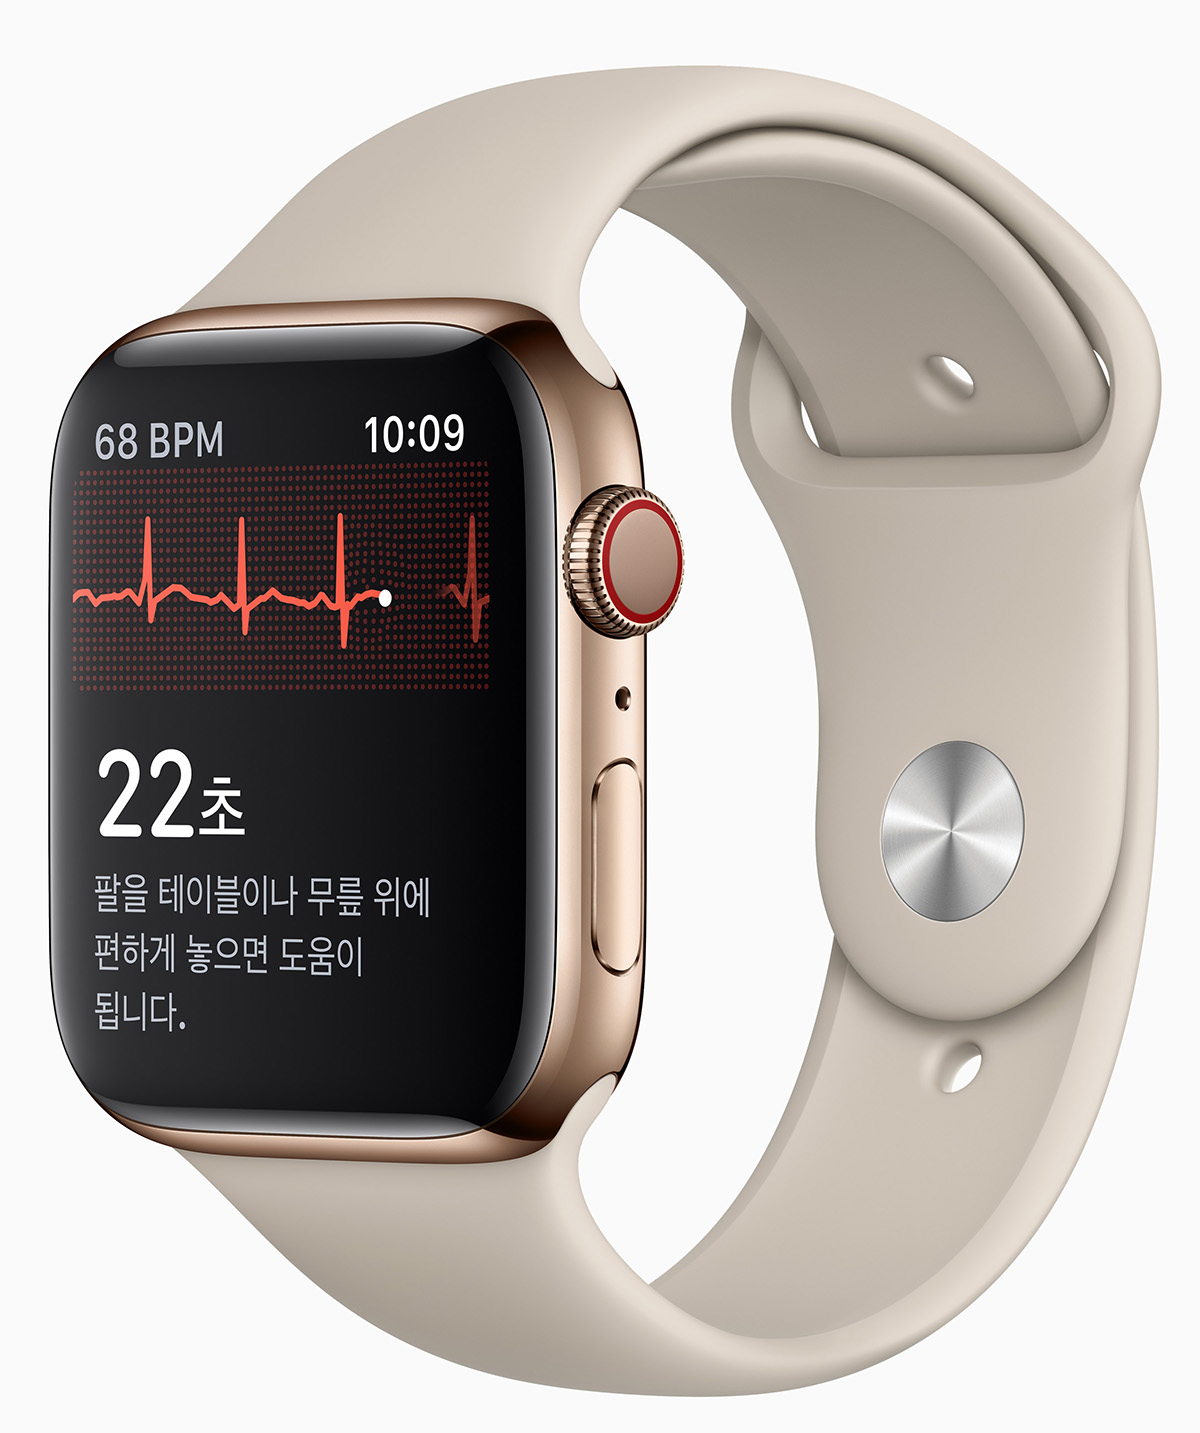 韓國 Apple Watch 將開放心電圖和心律不整通知功能 | Apple Watch, ECG心電圖, iOS 14.2, watchOS | iPhone News 愛瘋了